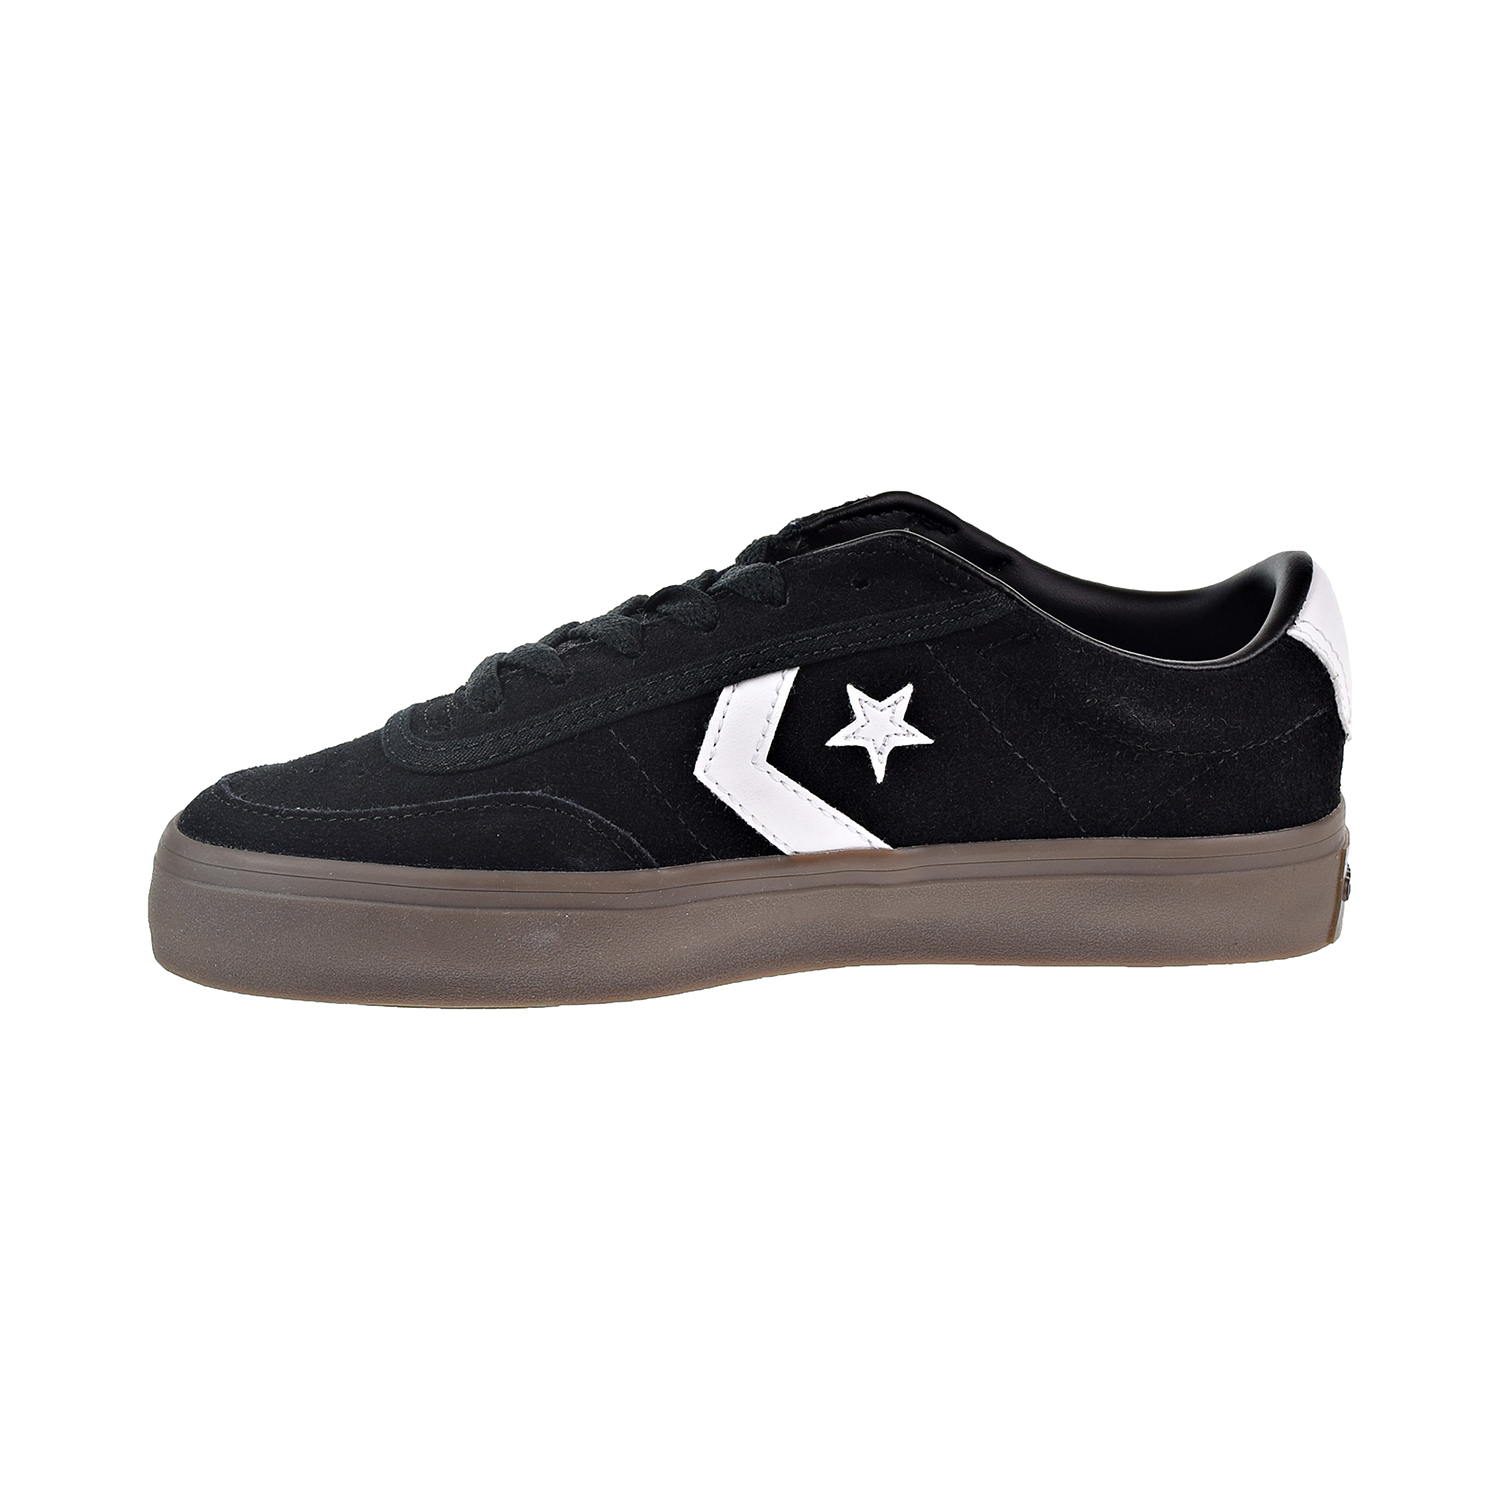 Lujoso nivel proteger Converse Courtlandt OX Big Kids'/Men's Shoes Black/White/Brown 162570c (5.5  D(M) US)